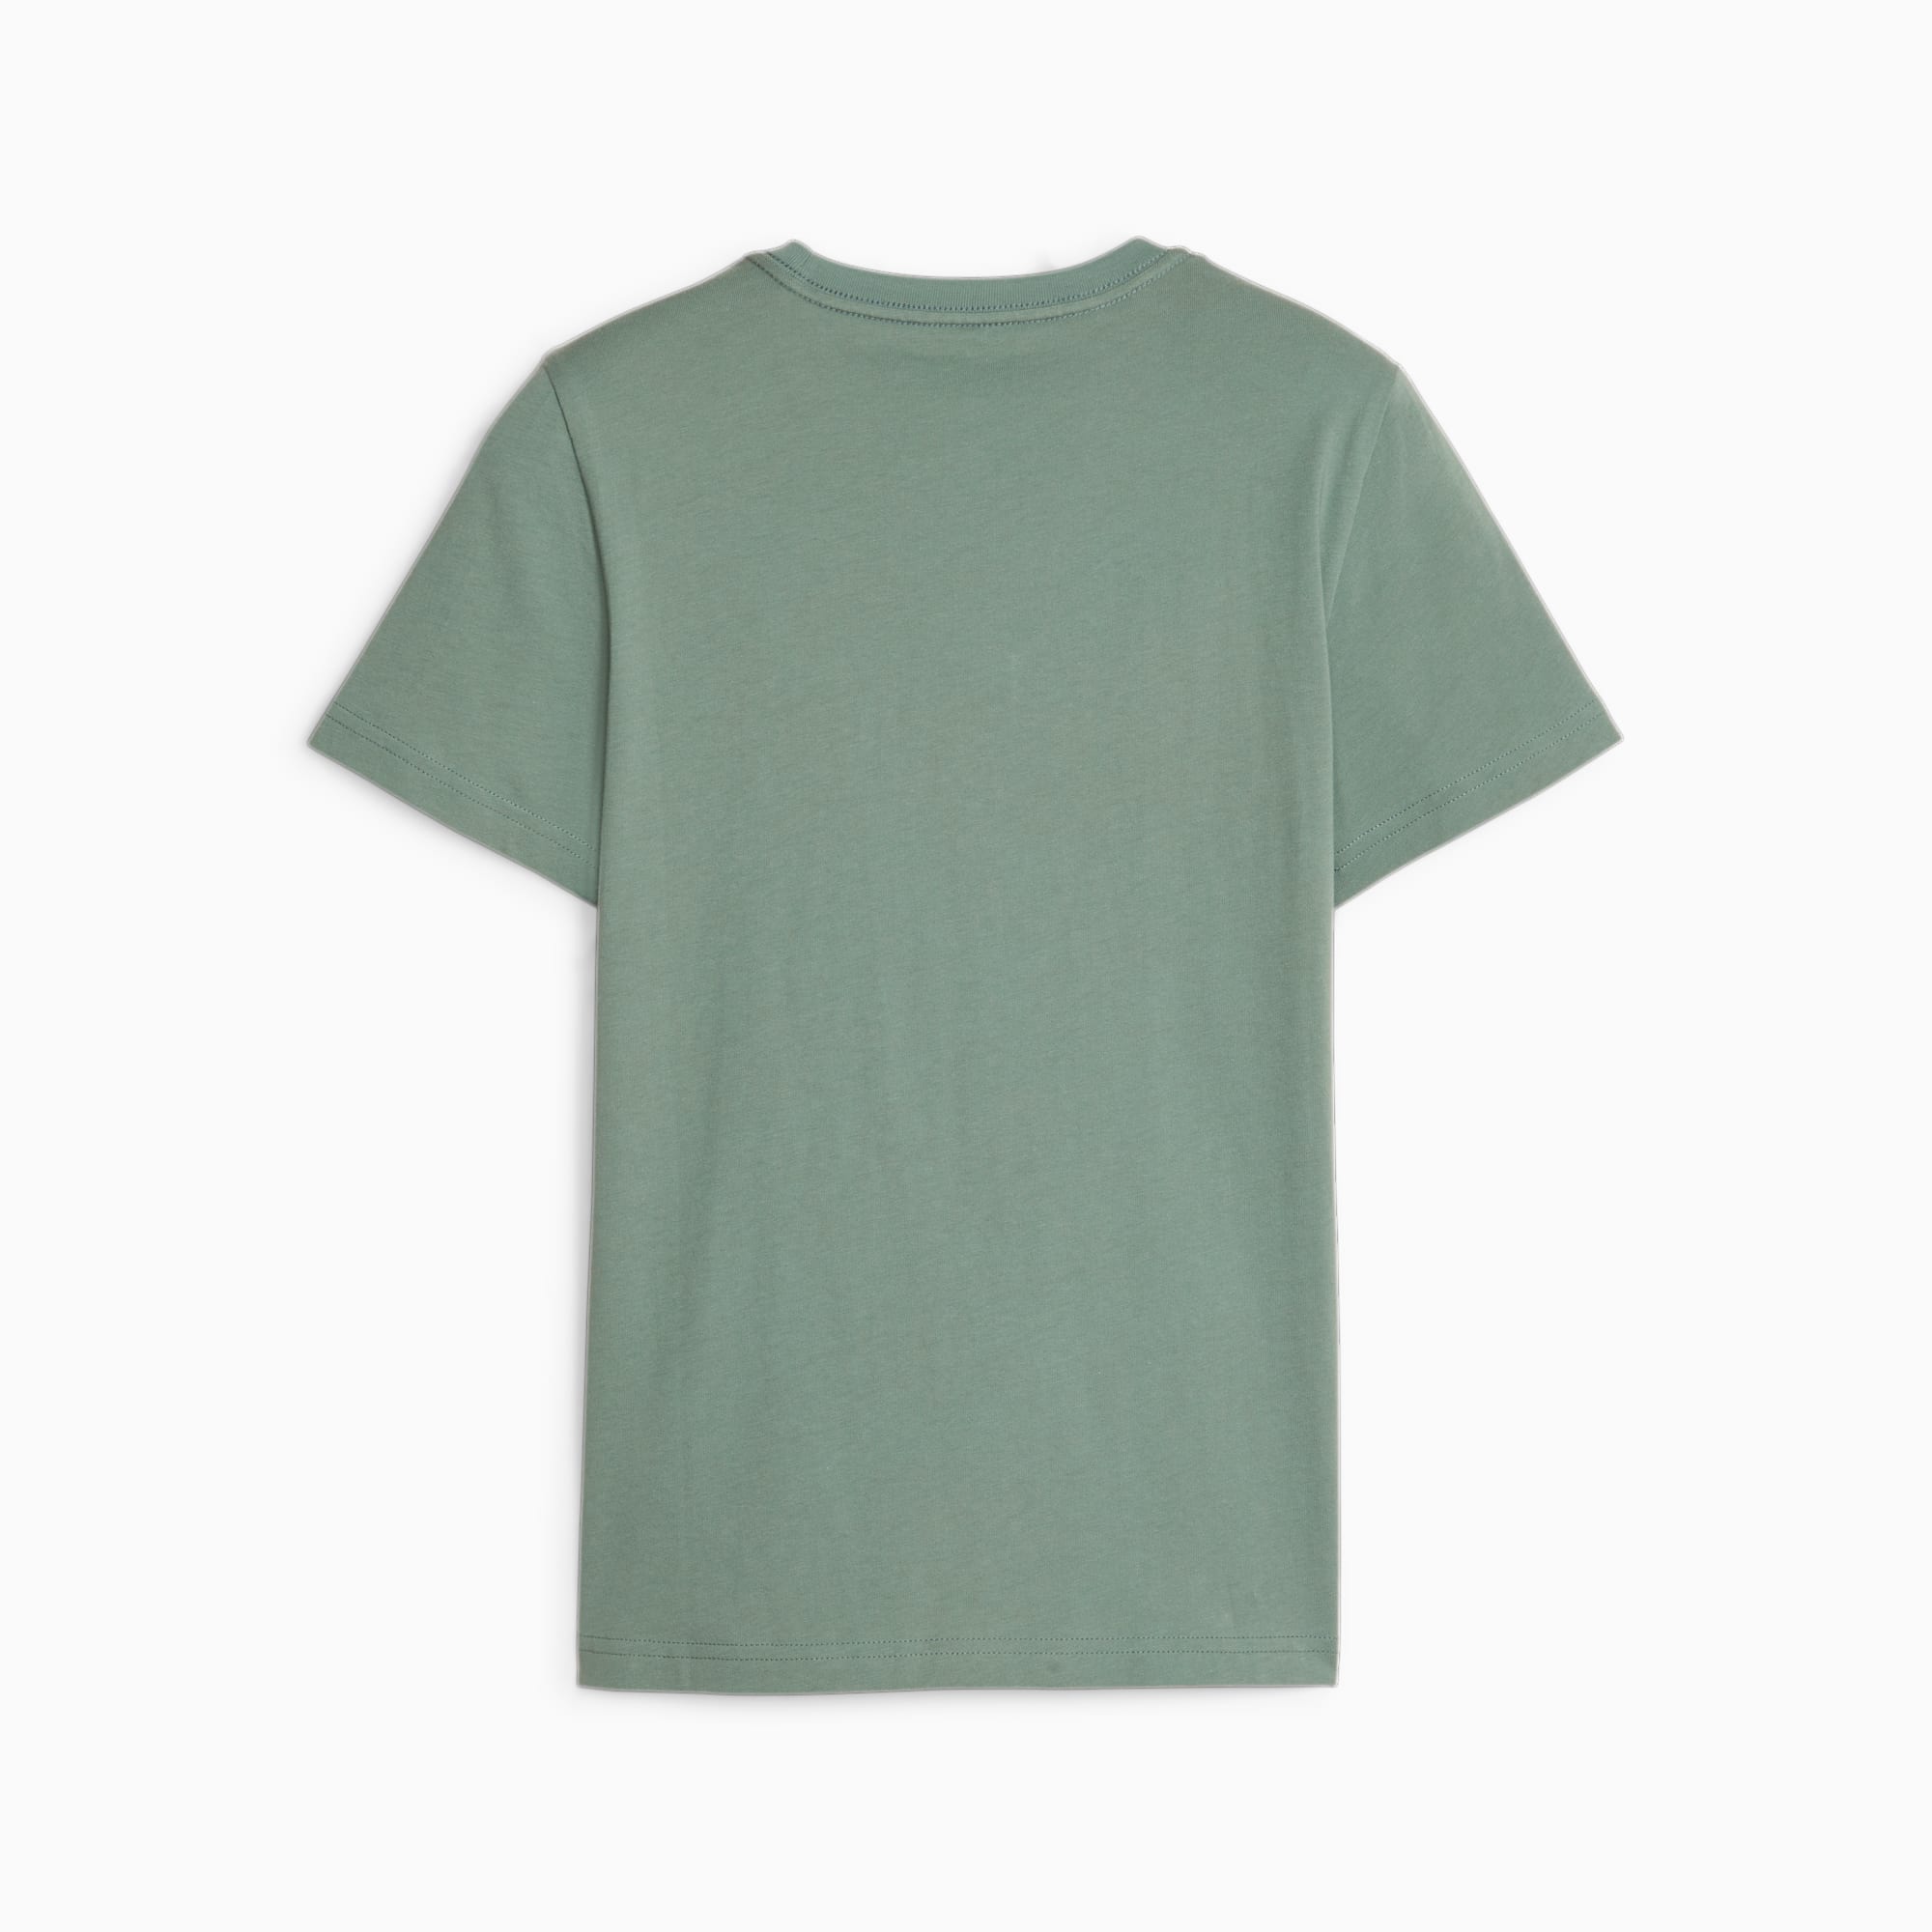 PUMA Essentials Jugend T-Shirt Mit Logo Für Kinder, Mehrfarbig, Größe: 140, Kleidung